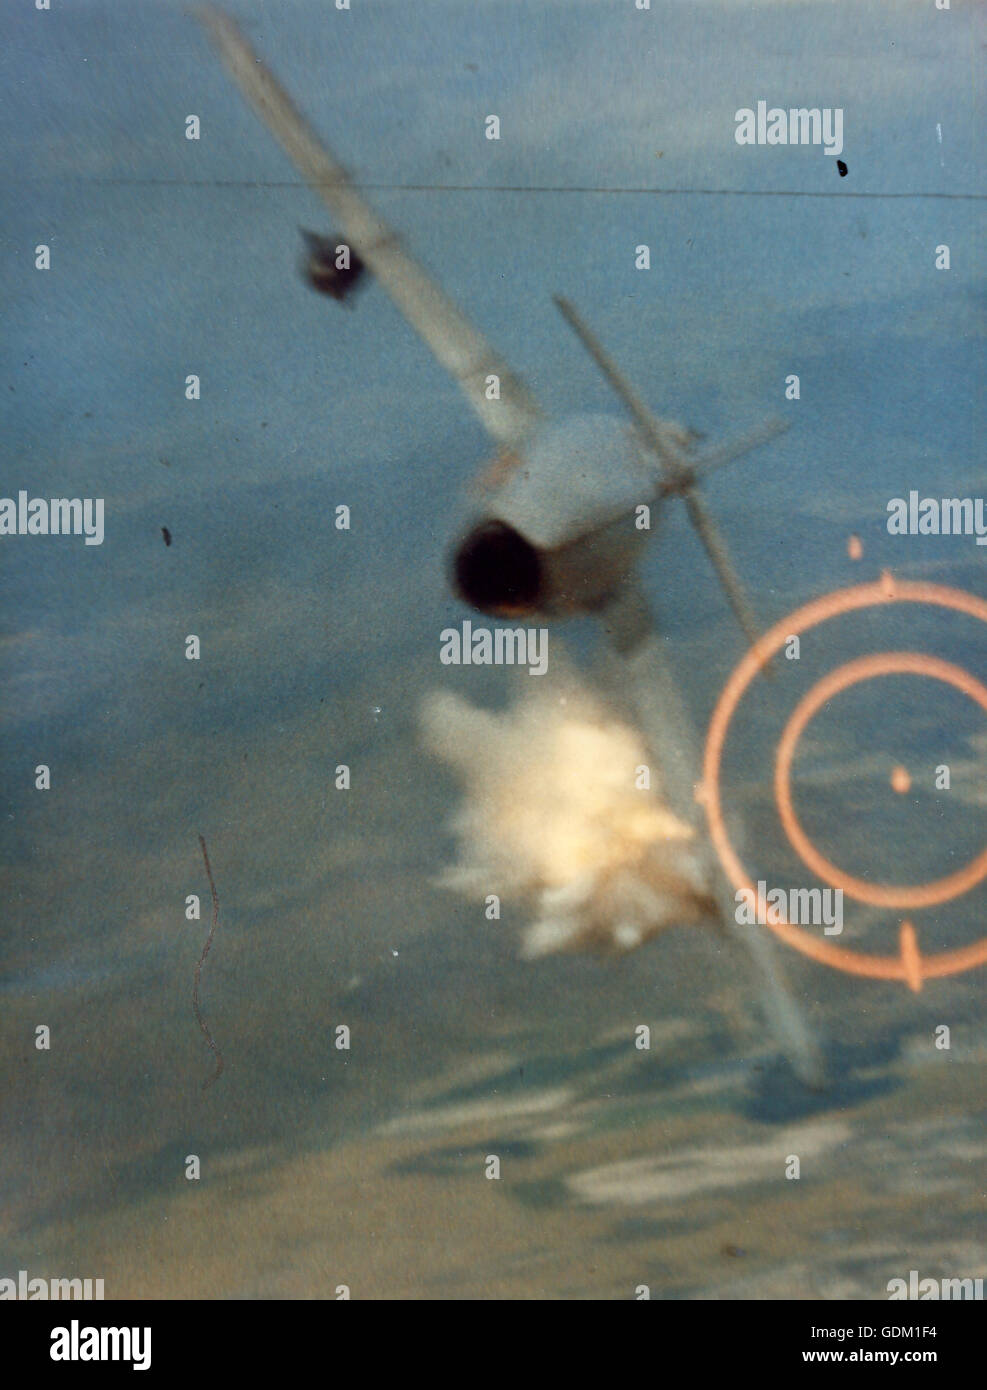 La morte di un MIG. La cottura il suo 20mm cannon a bruciapelo, il Mag. Kuster colpisce l'ala sinistra del MIG vicino alla fusoliera e prorompe in fiamme. La maggiore F-105 passò a pochi metri sotto il flaming MIG. Il Vietnam. Foto Stock